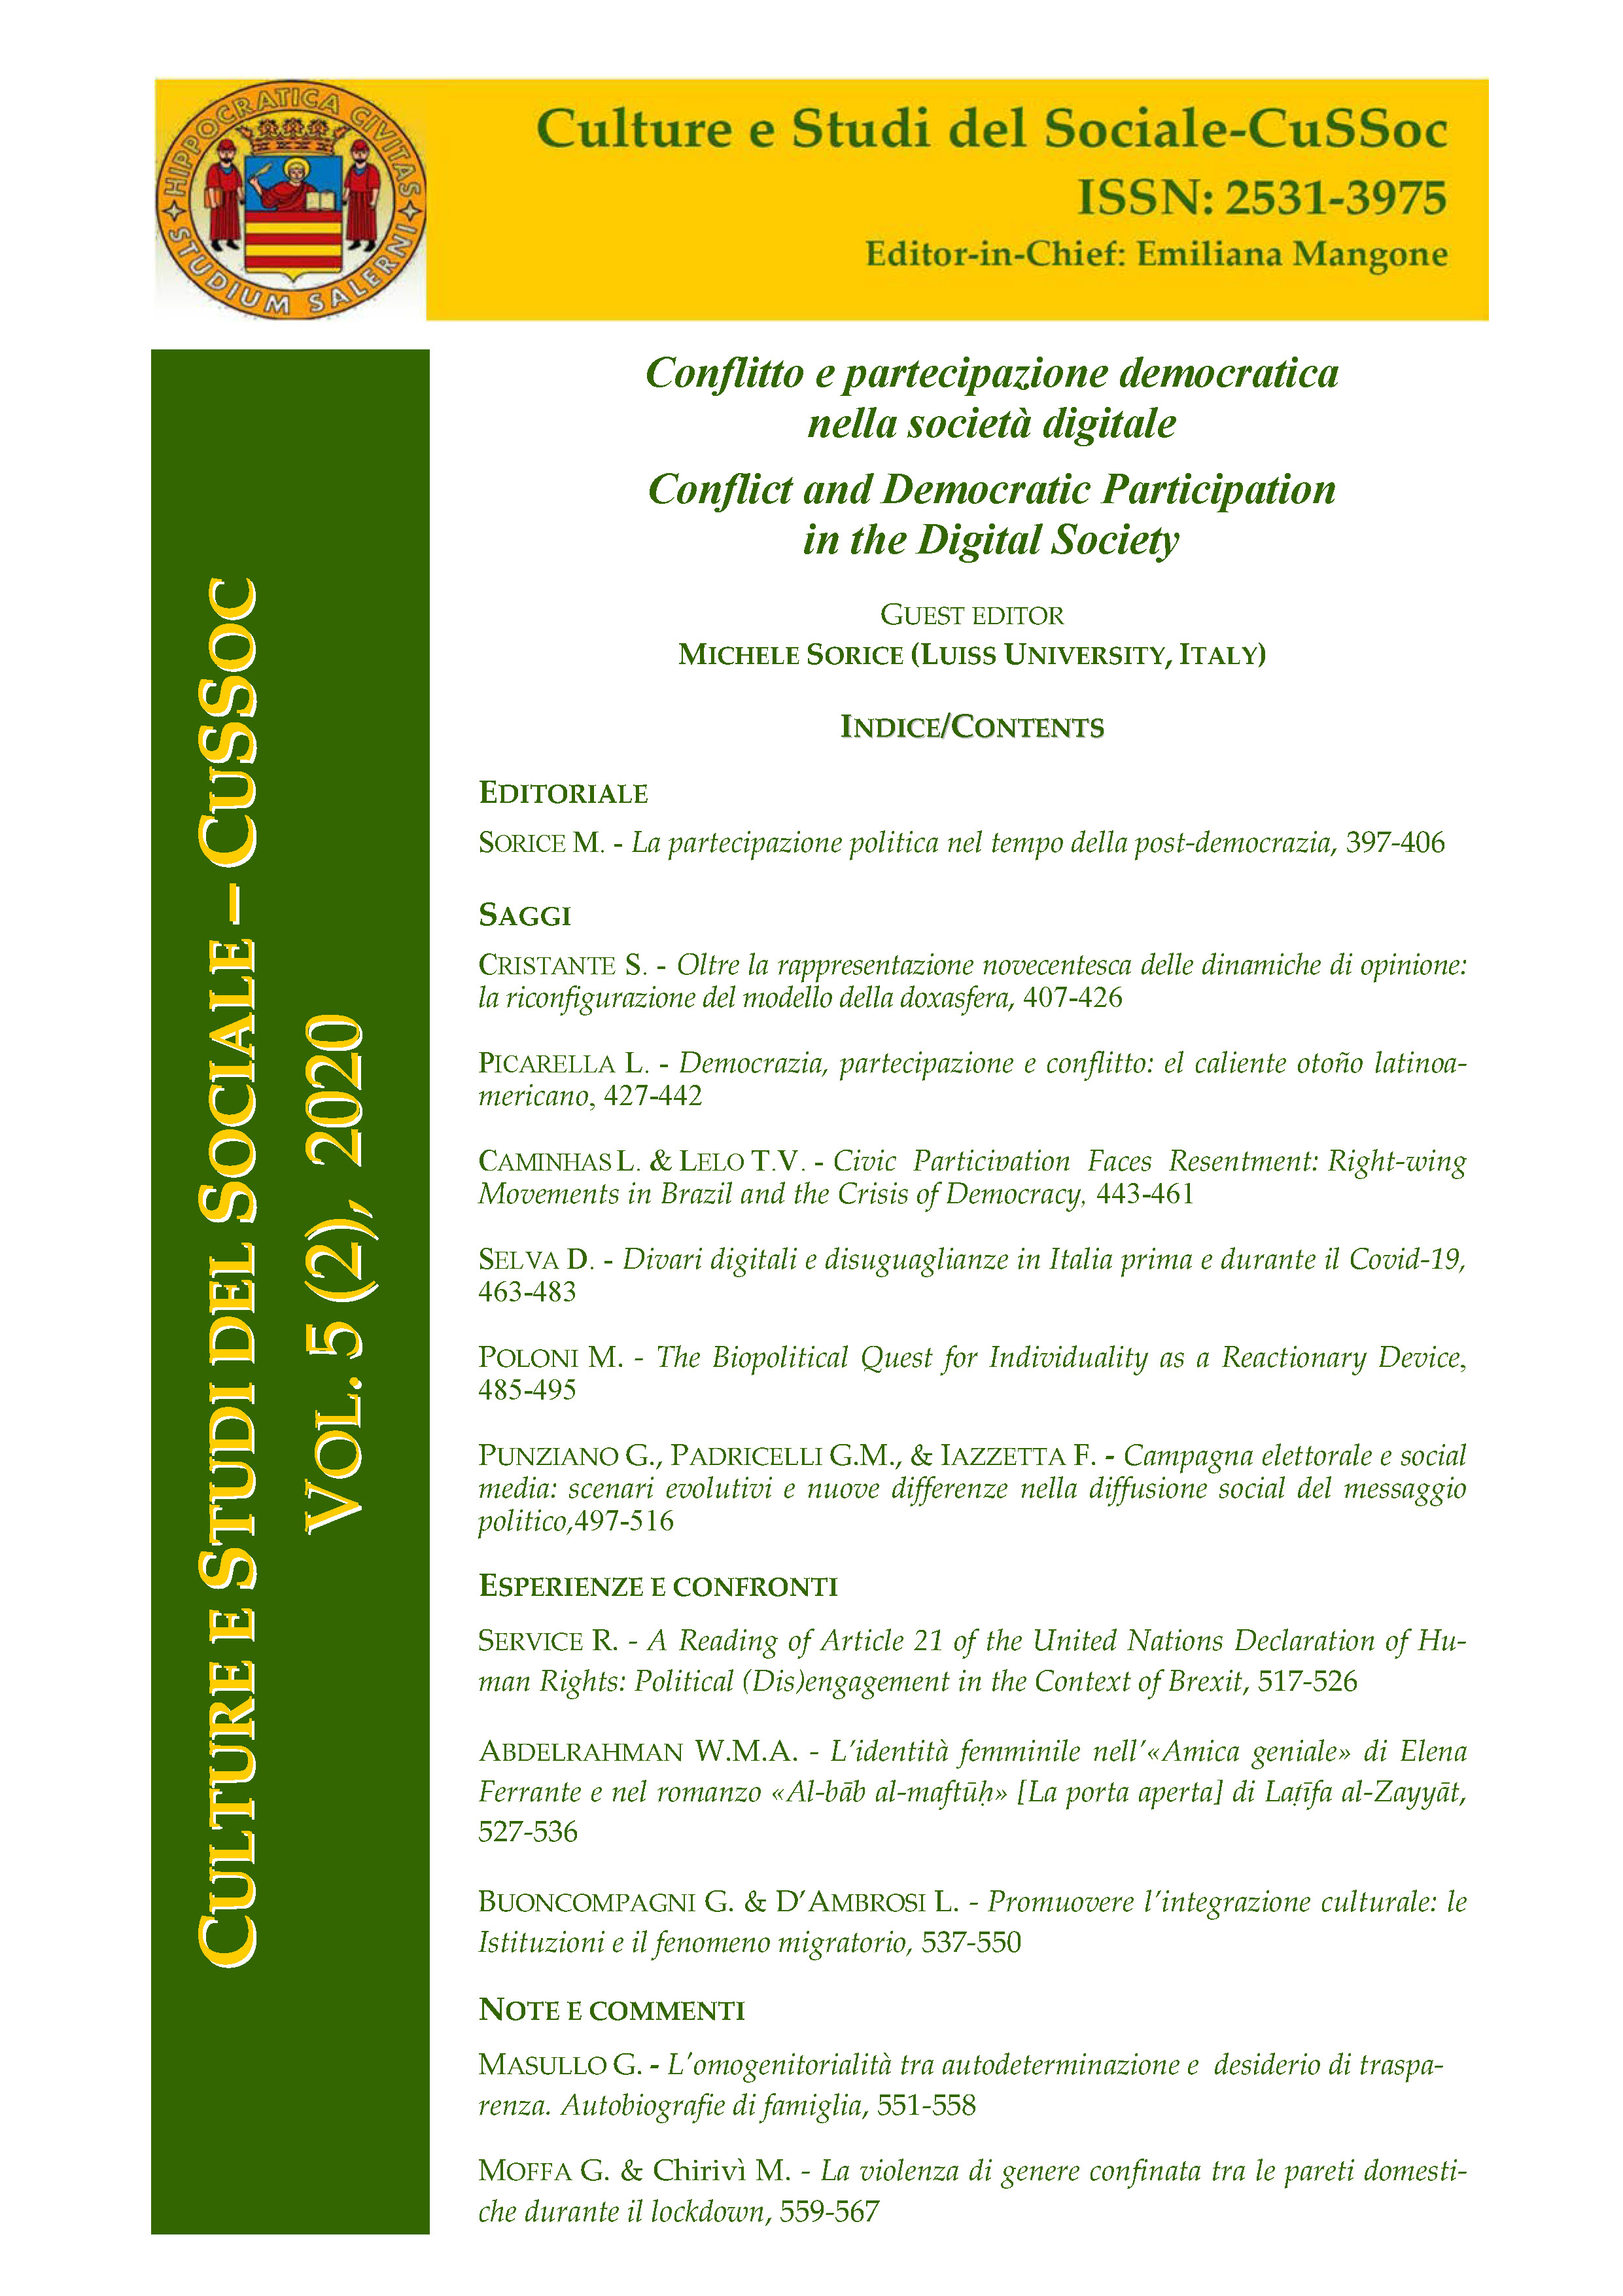 					View Vol. 5 No. 2 (2020): Conflitto e partecipazione democratica  nella società digitale / Conflict and Democratic Participation  in the Digital Society  - Guest Editor,  Michele Sorice (Luiss University, Italy)
				